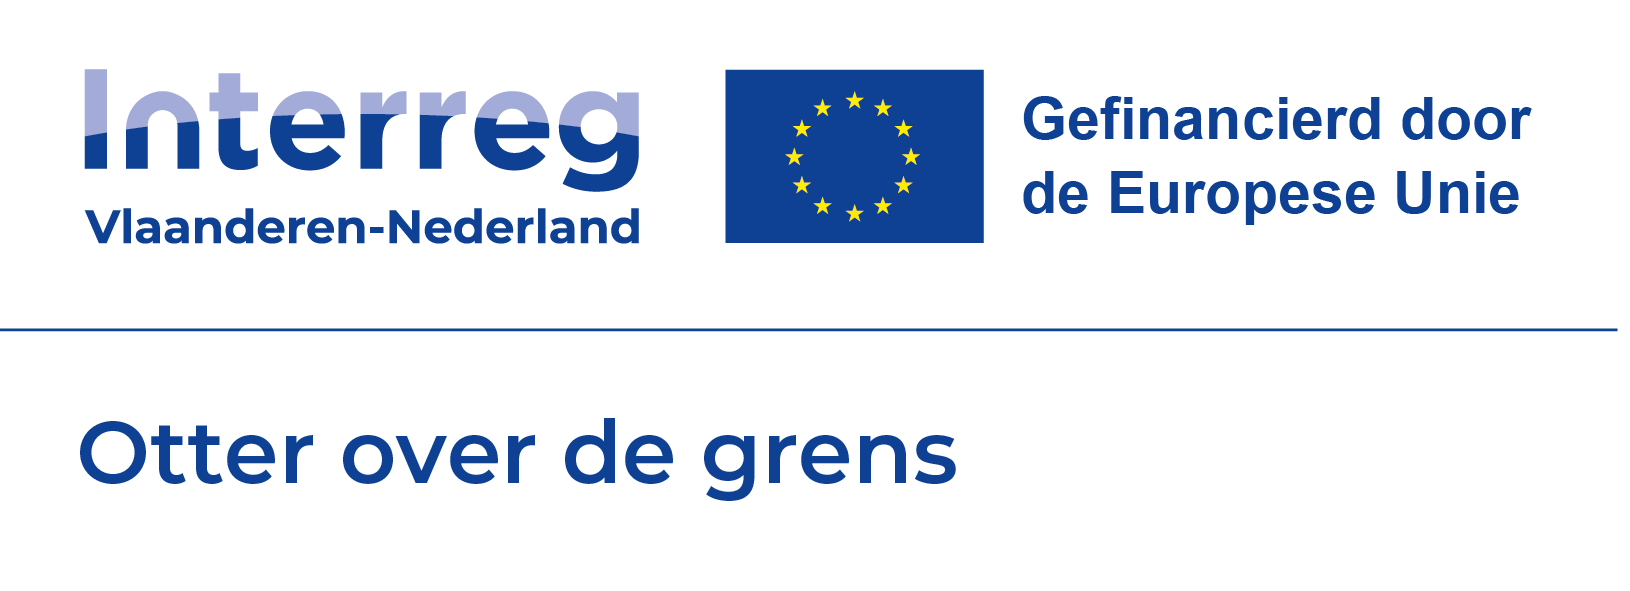 logo Interreg Otter over de grens